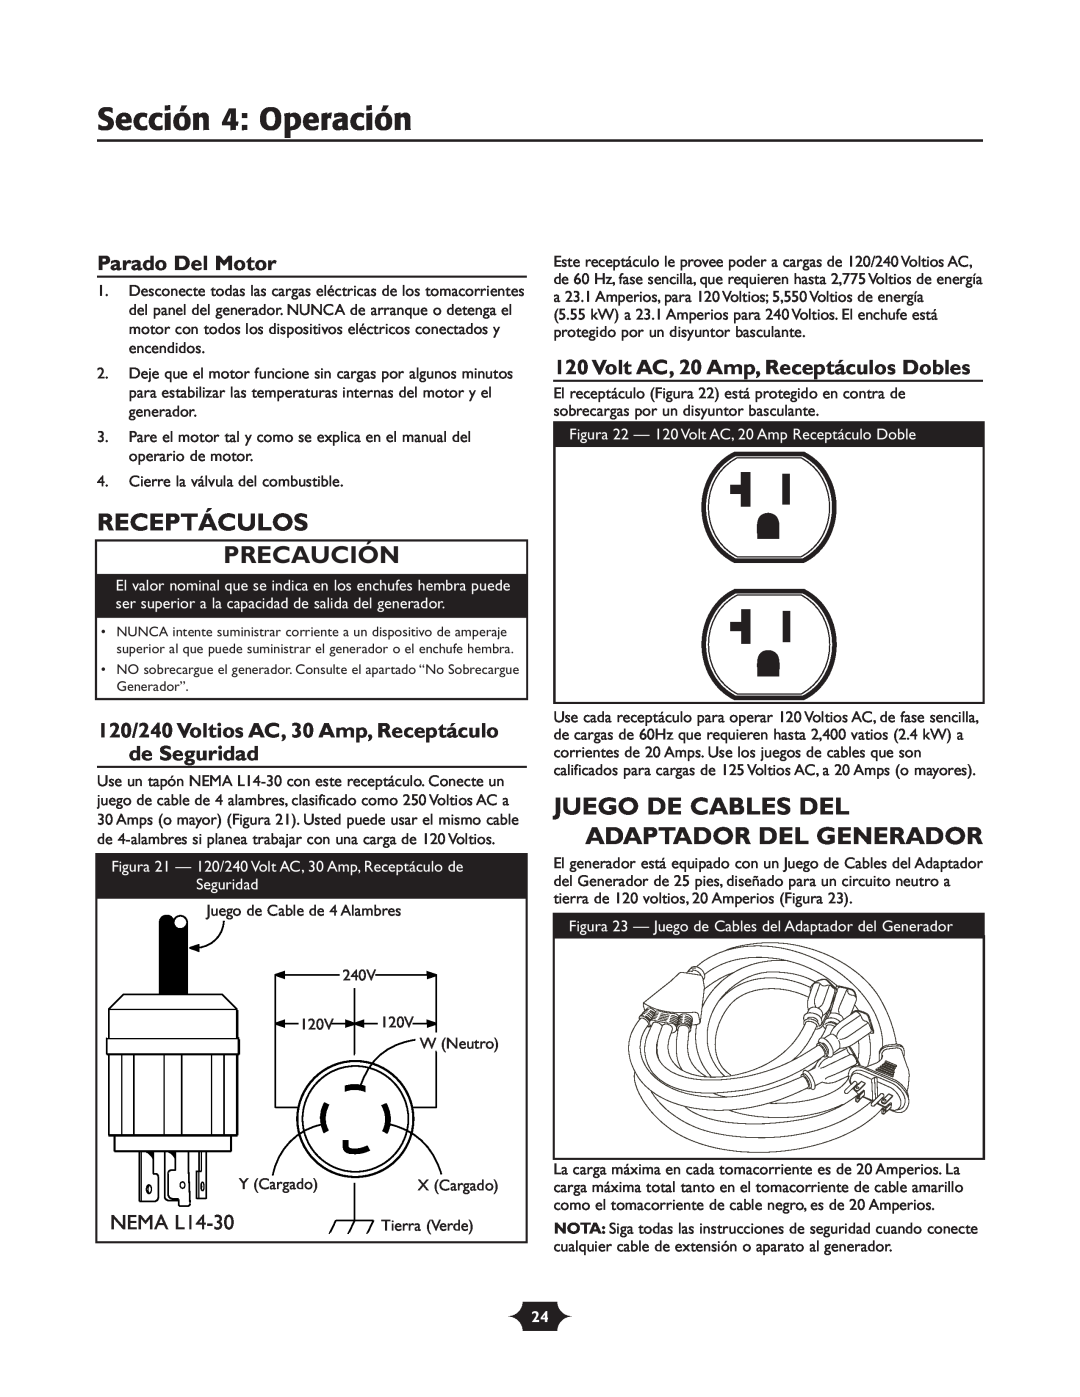 Troy-Bilt 030245 manual Receptáculos Precaución, Juego De Cables Del Adaptador Del Generador, Parado Del Motor, NEMA L14-30 